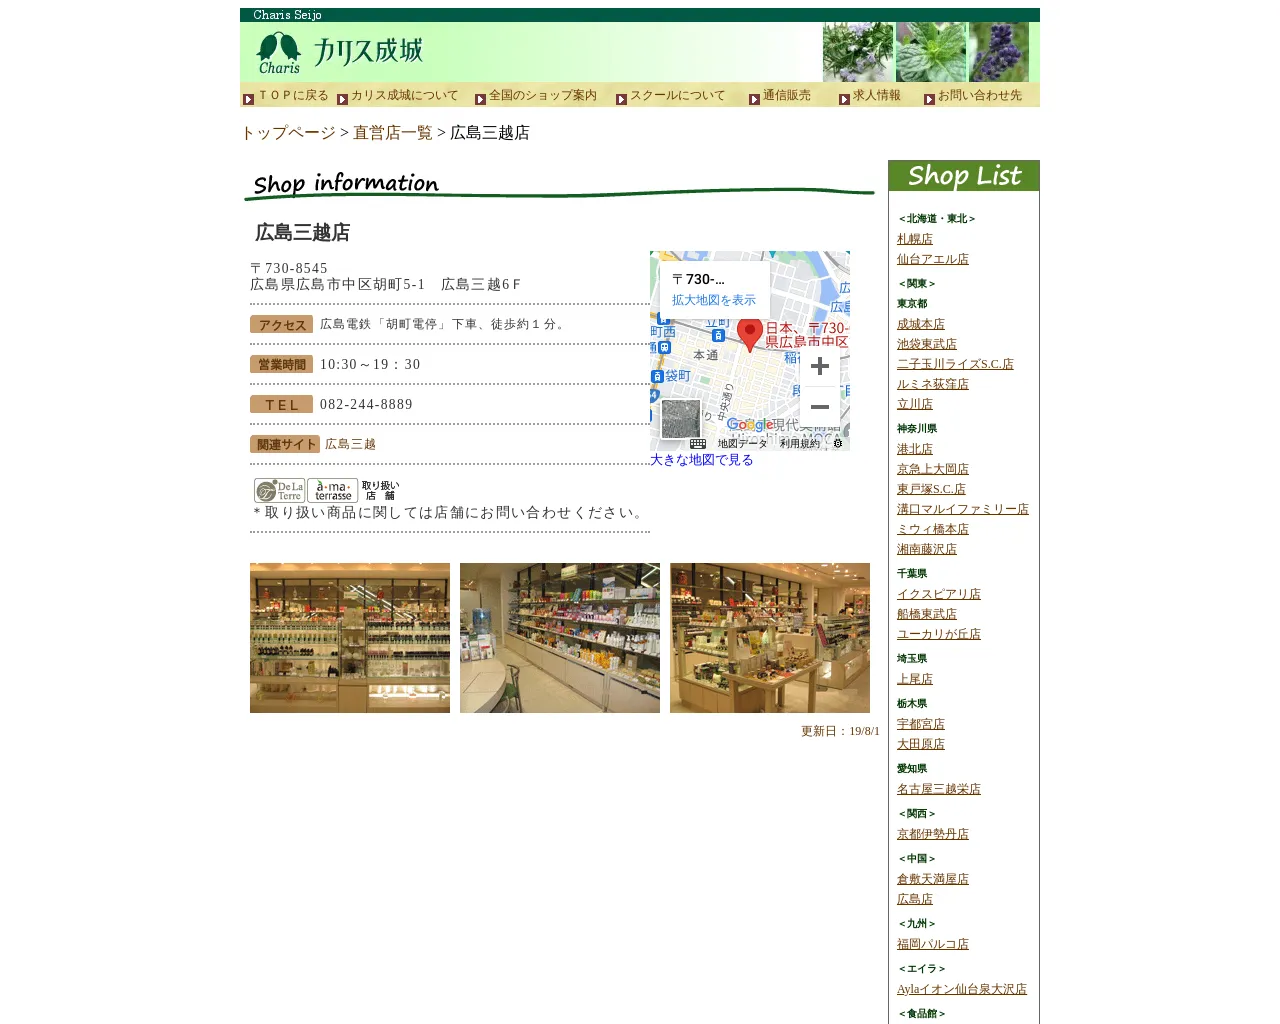 カリス成城 広島三越店 6F site